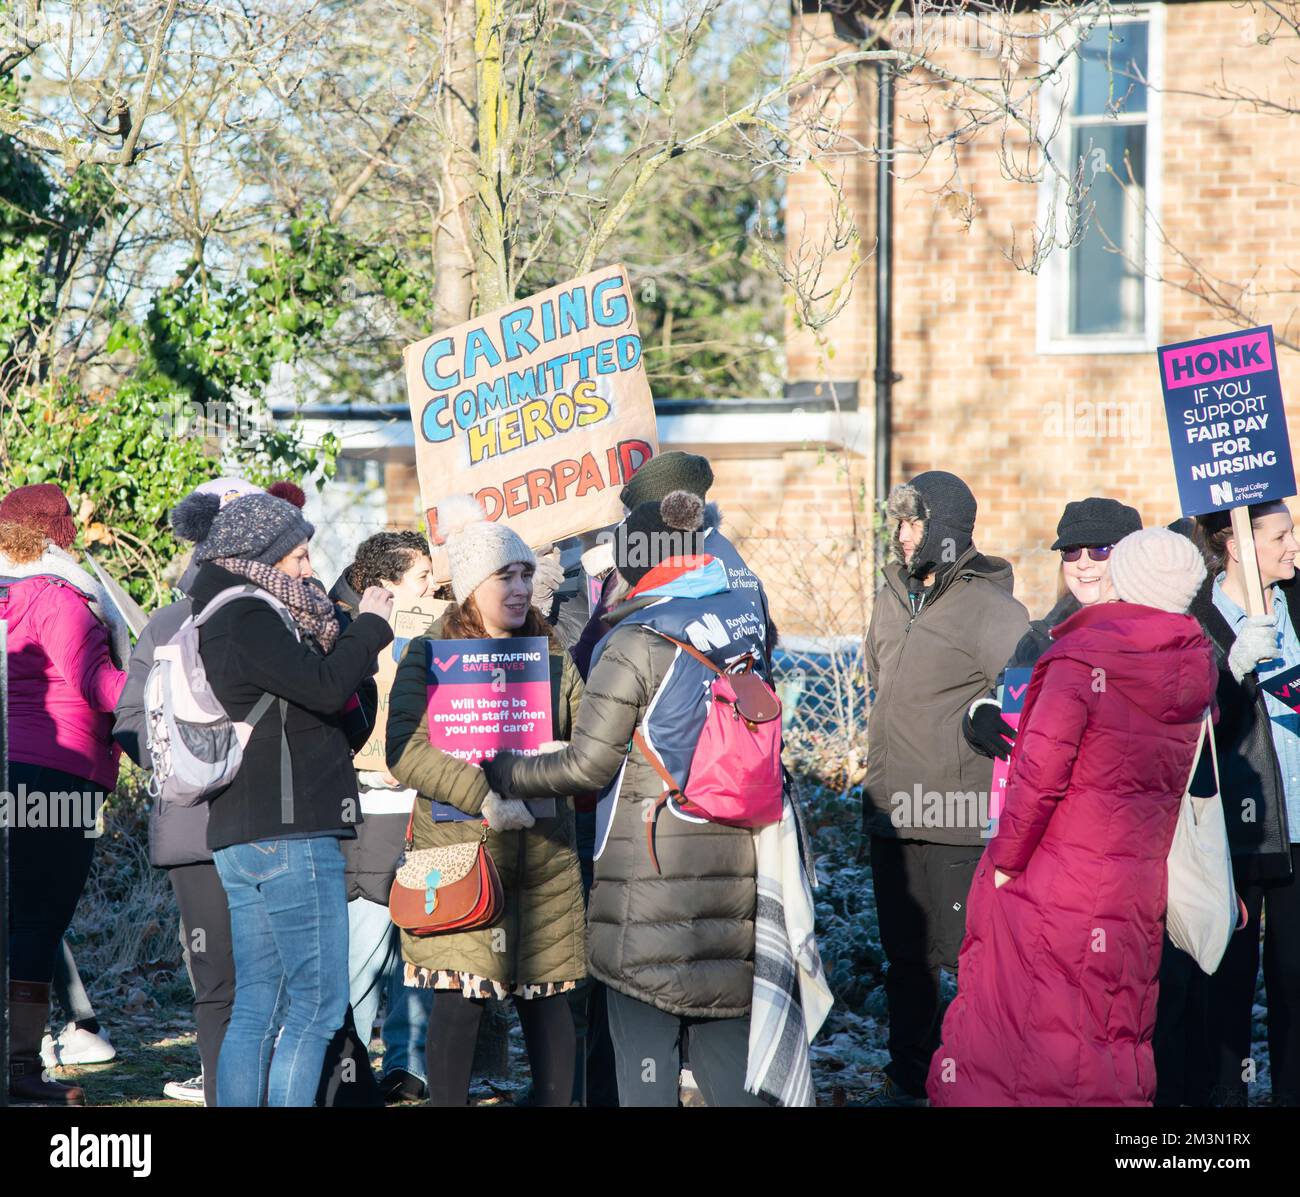 Dicembre 15th 2022 gli infermieri di Oxford, Regno Unito a Oxford hanno intrapreso un'azione di sciopero per promuovere livelli di personale sicuri e una retribuzione equa. Foto Stock